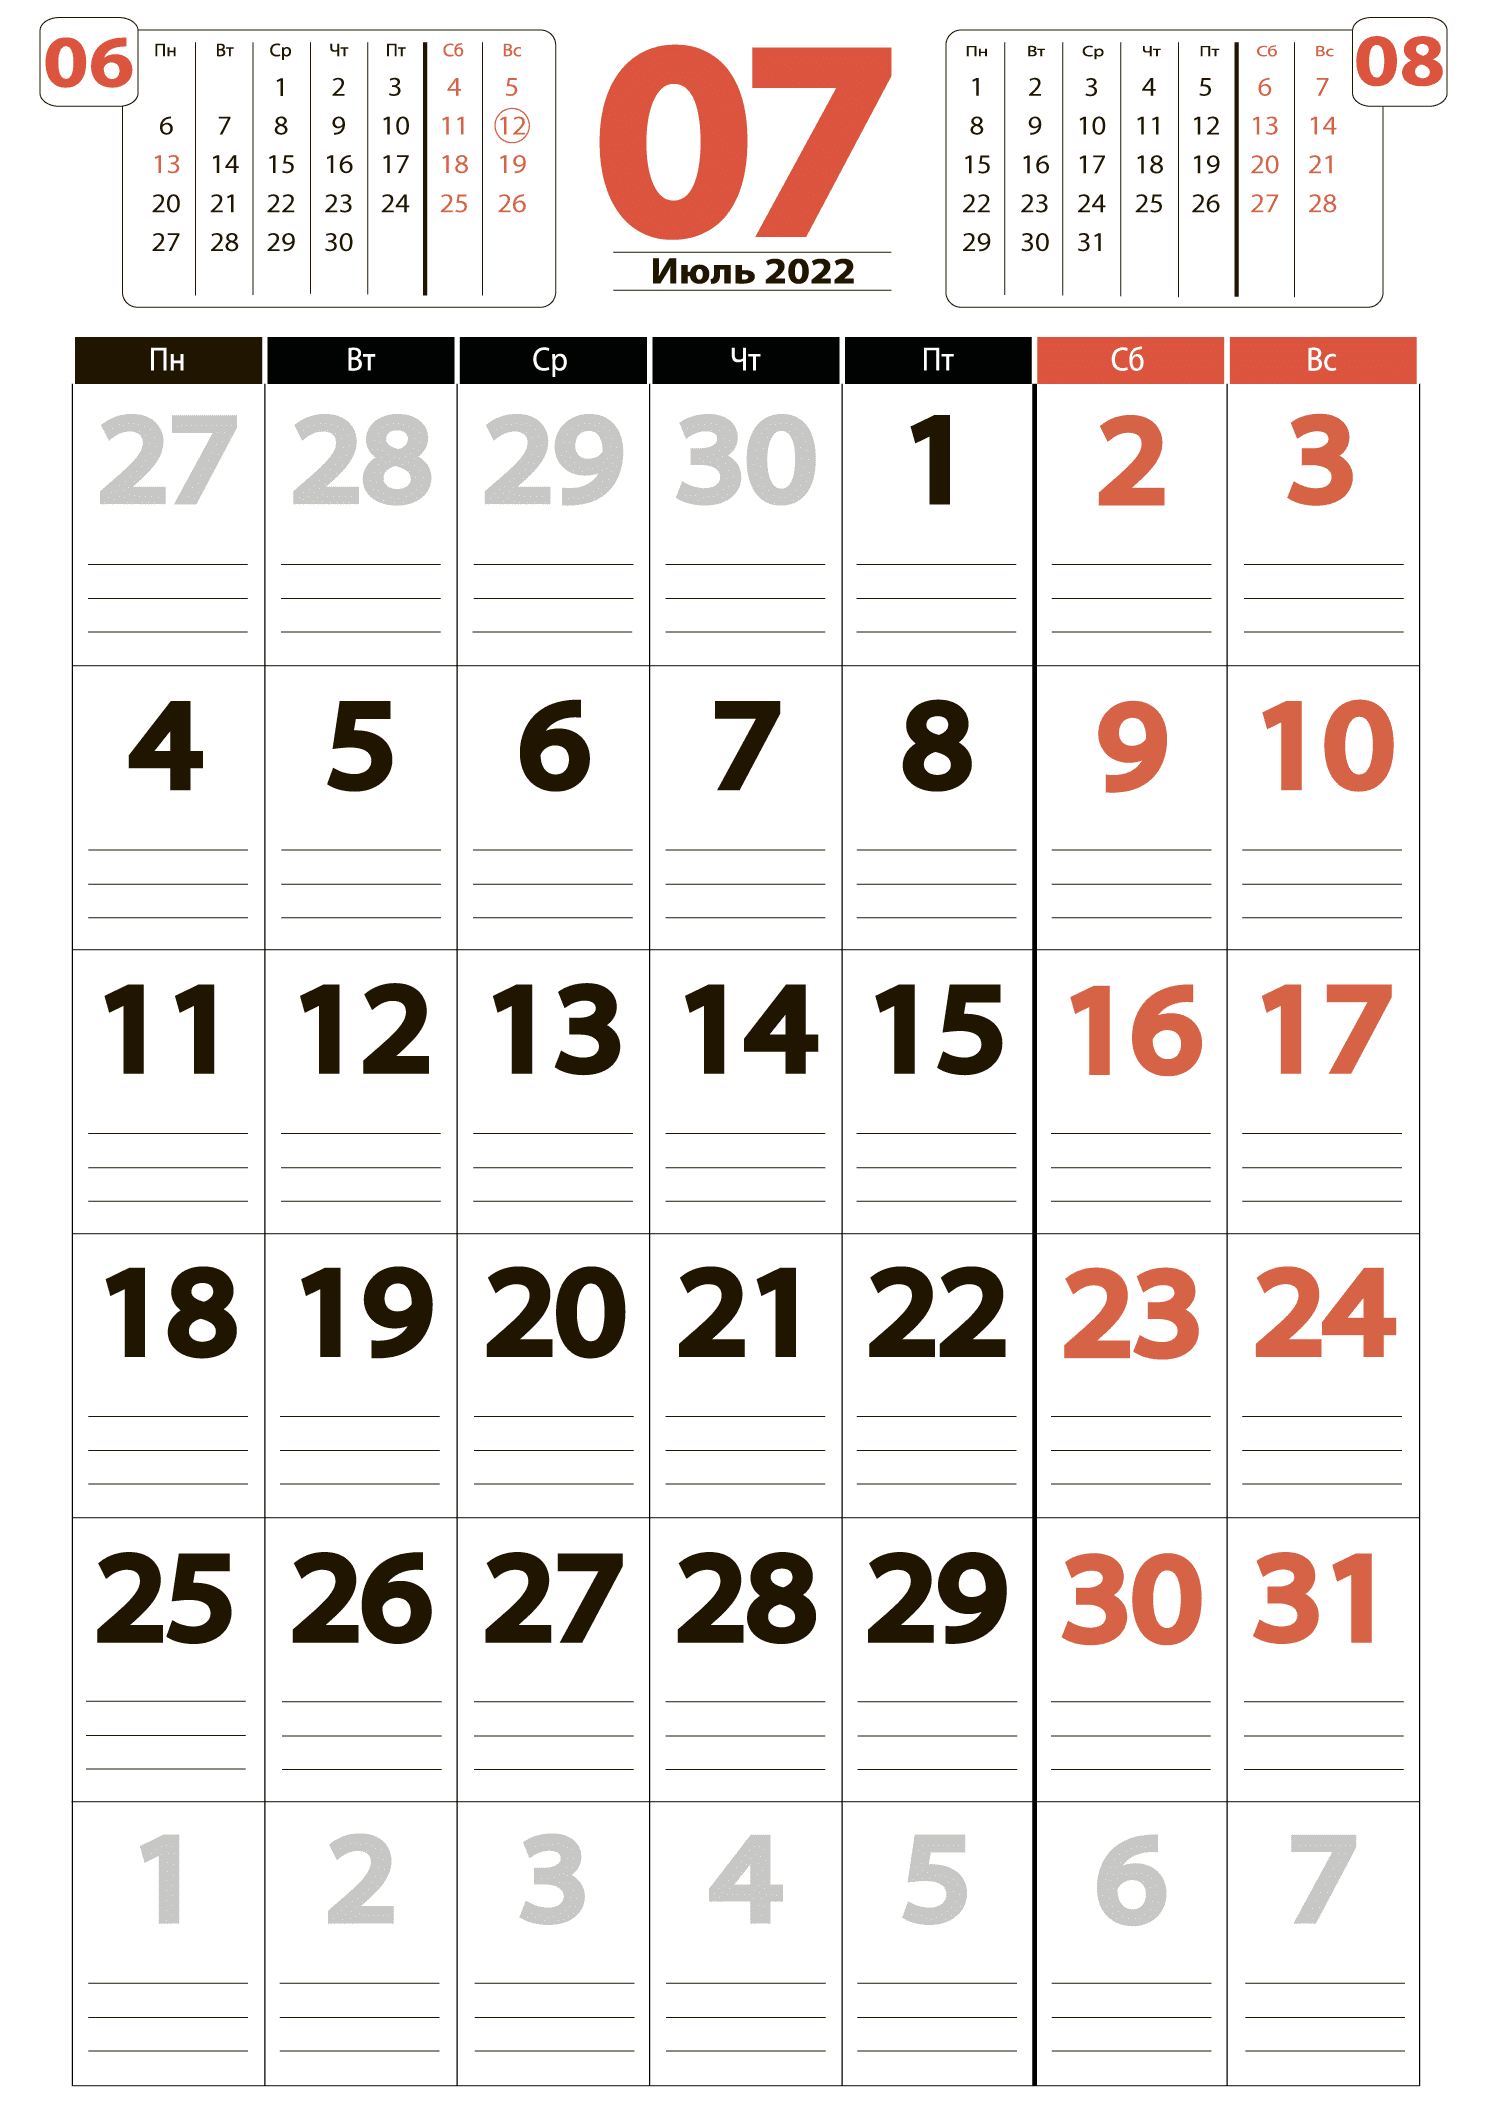 Печать крупного календаря на июль 2022